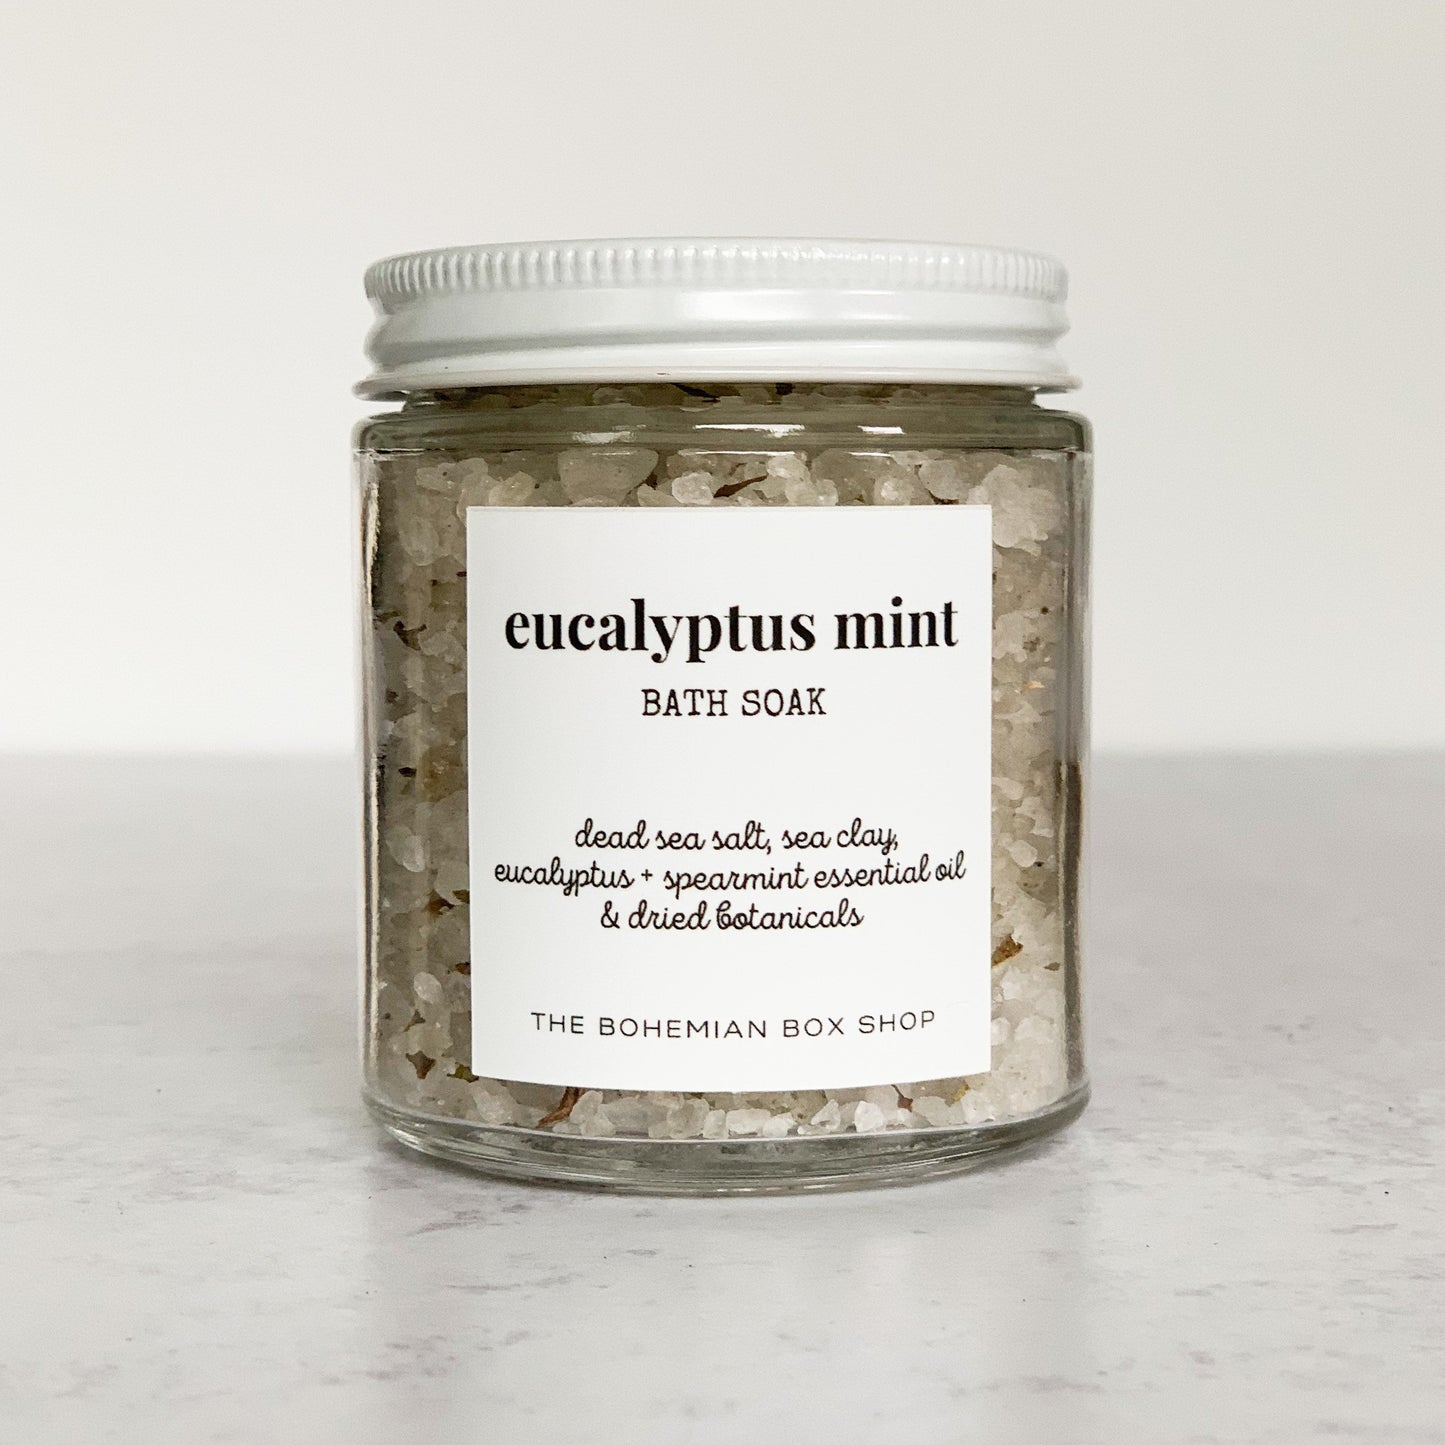 eucalyptus mint bath soak